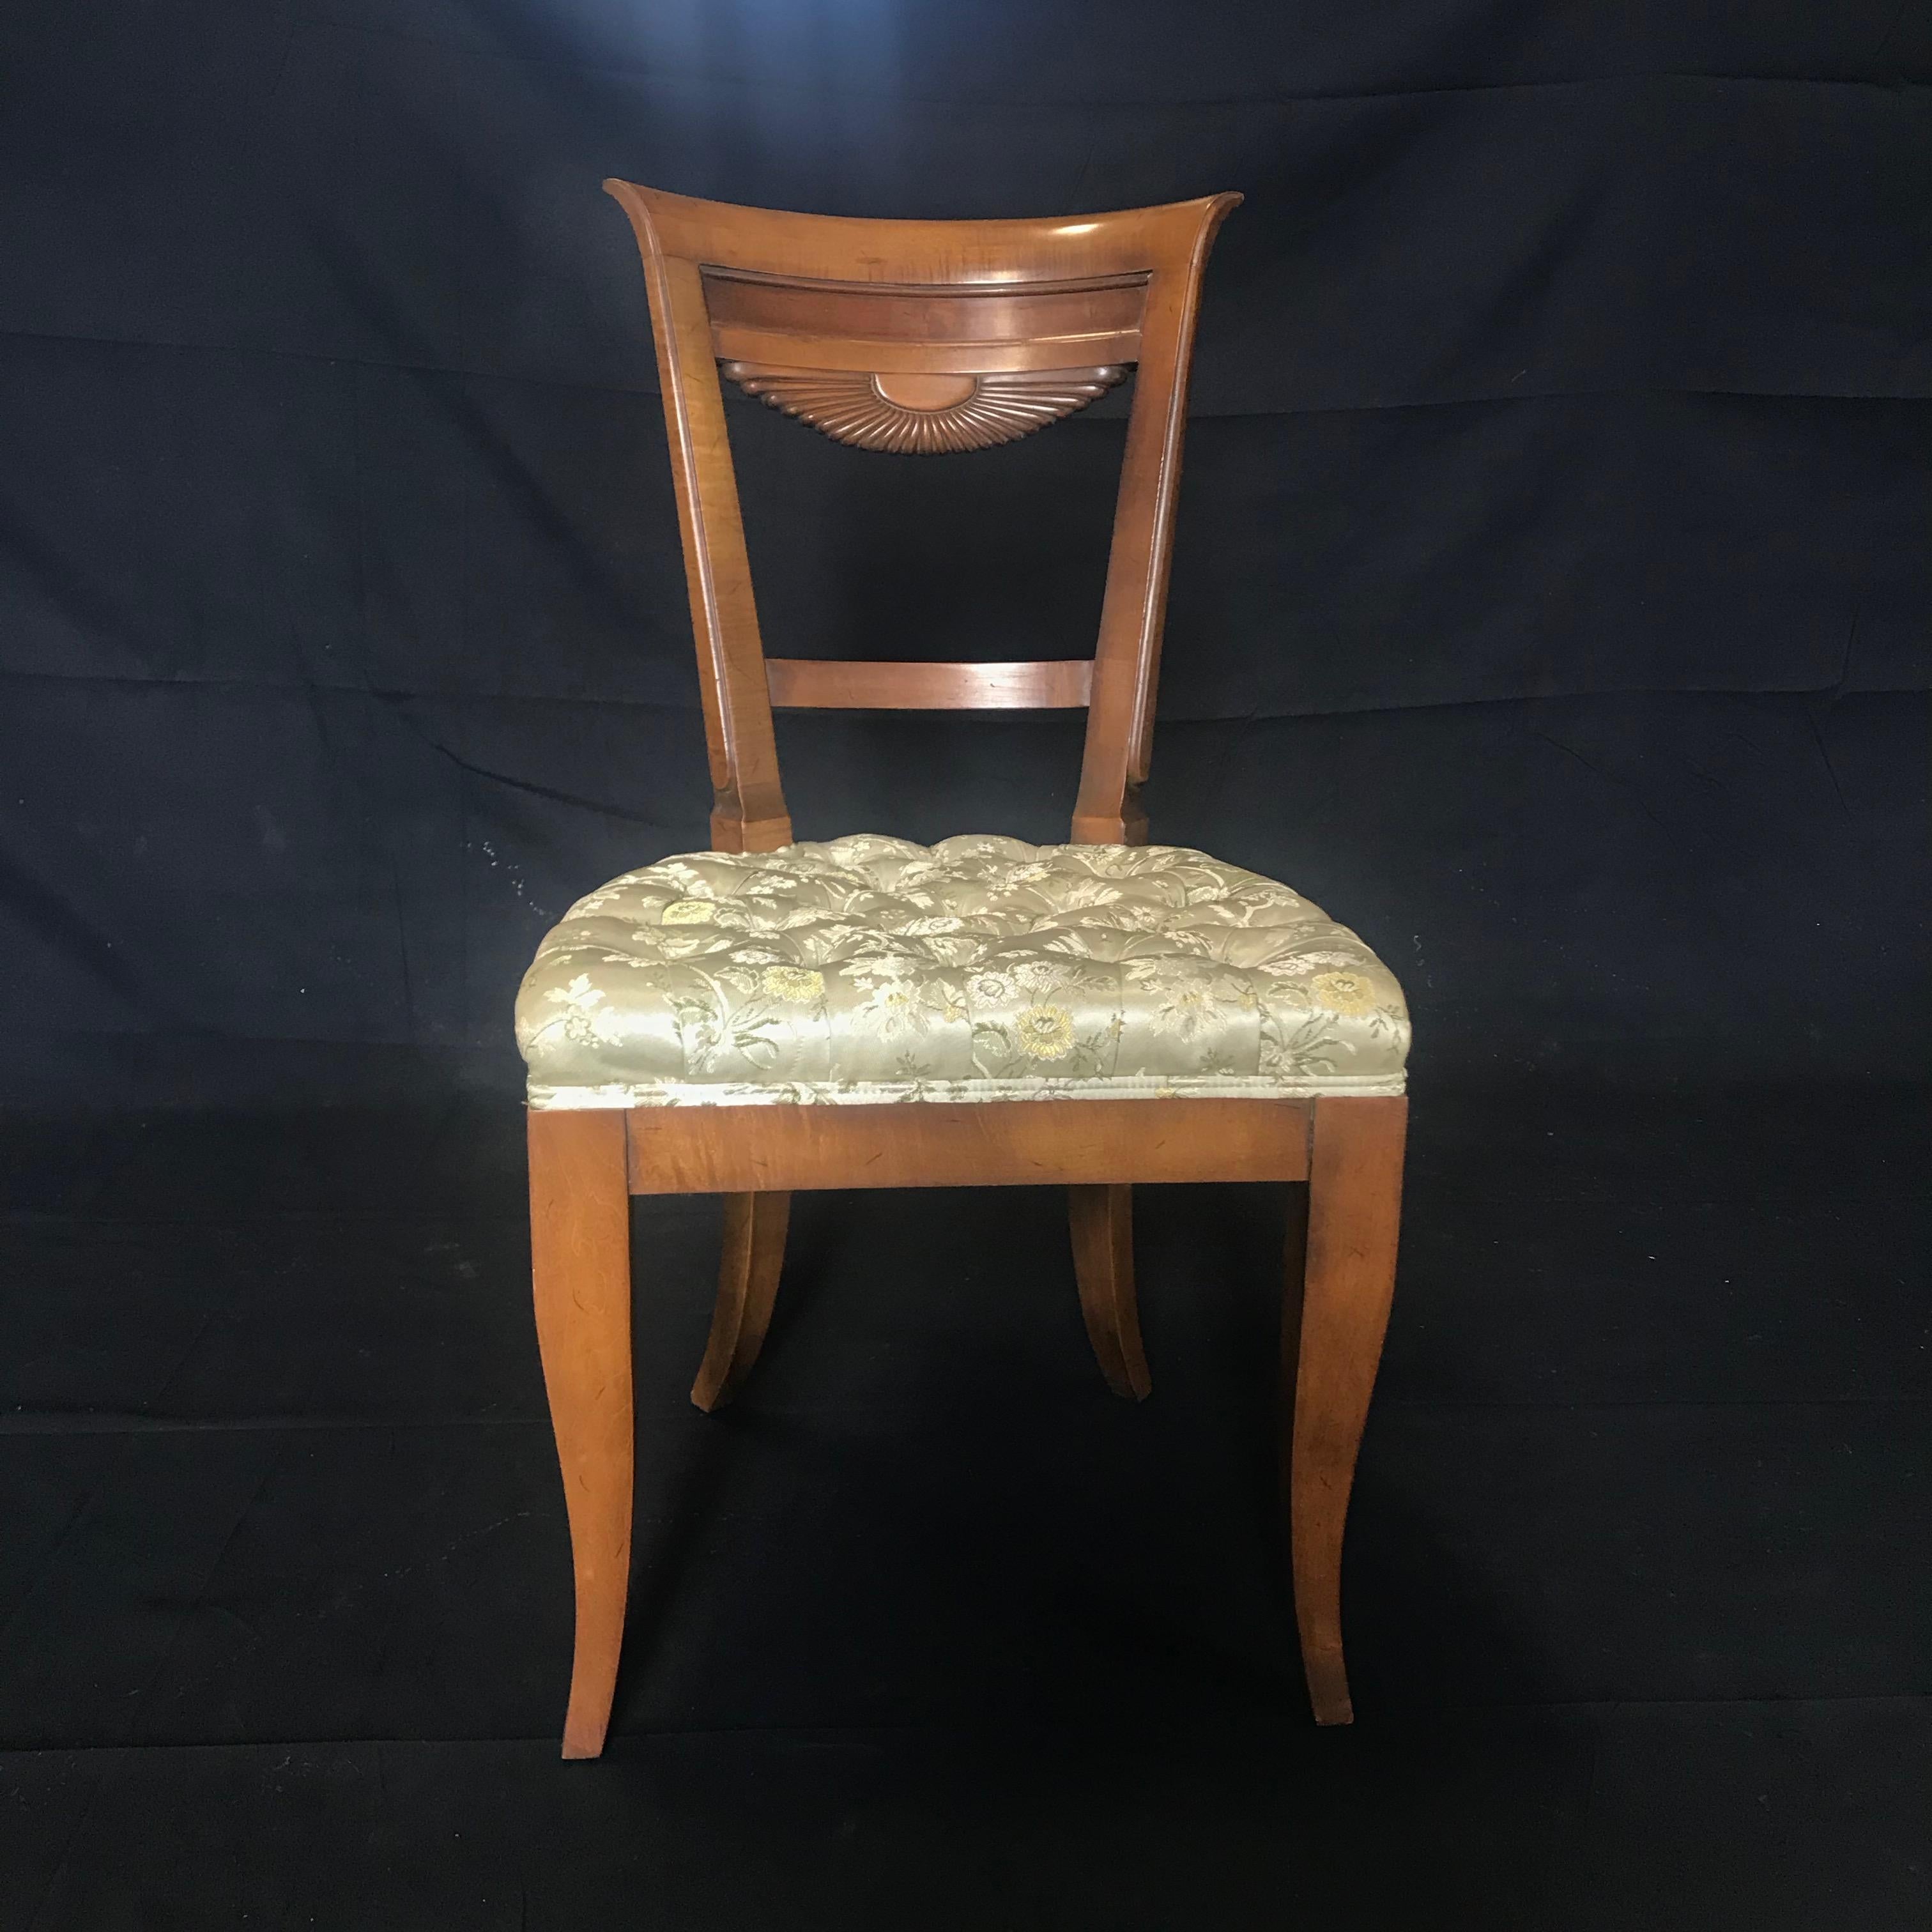 Ensemble de quatre chaises de salle à manger du milieu du siècle en noyer français, avec un beau design de dossier en éventail et des pieds tournés, tapissées dans une tapisserie de soie neutre immaculée. 
#4989

Mesures : Siège H 18.5